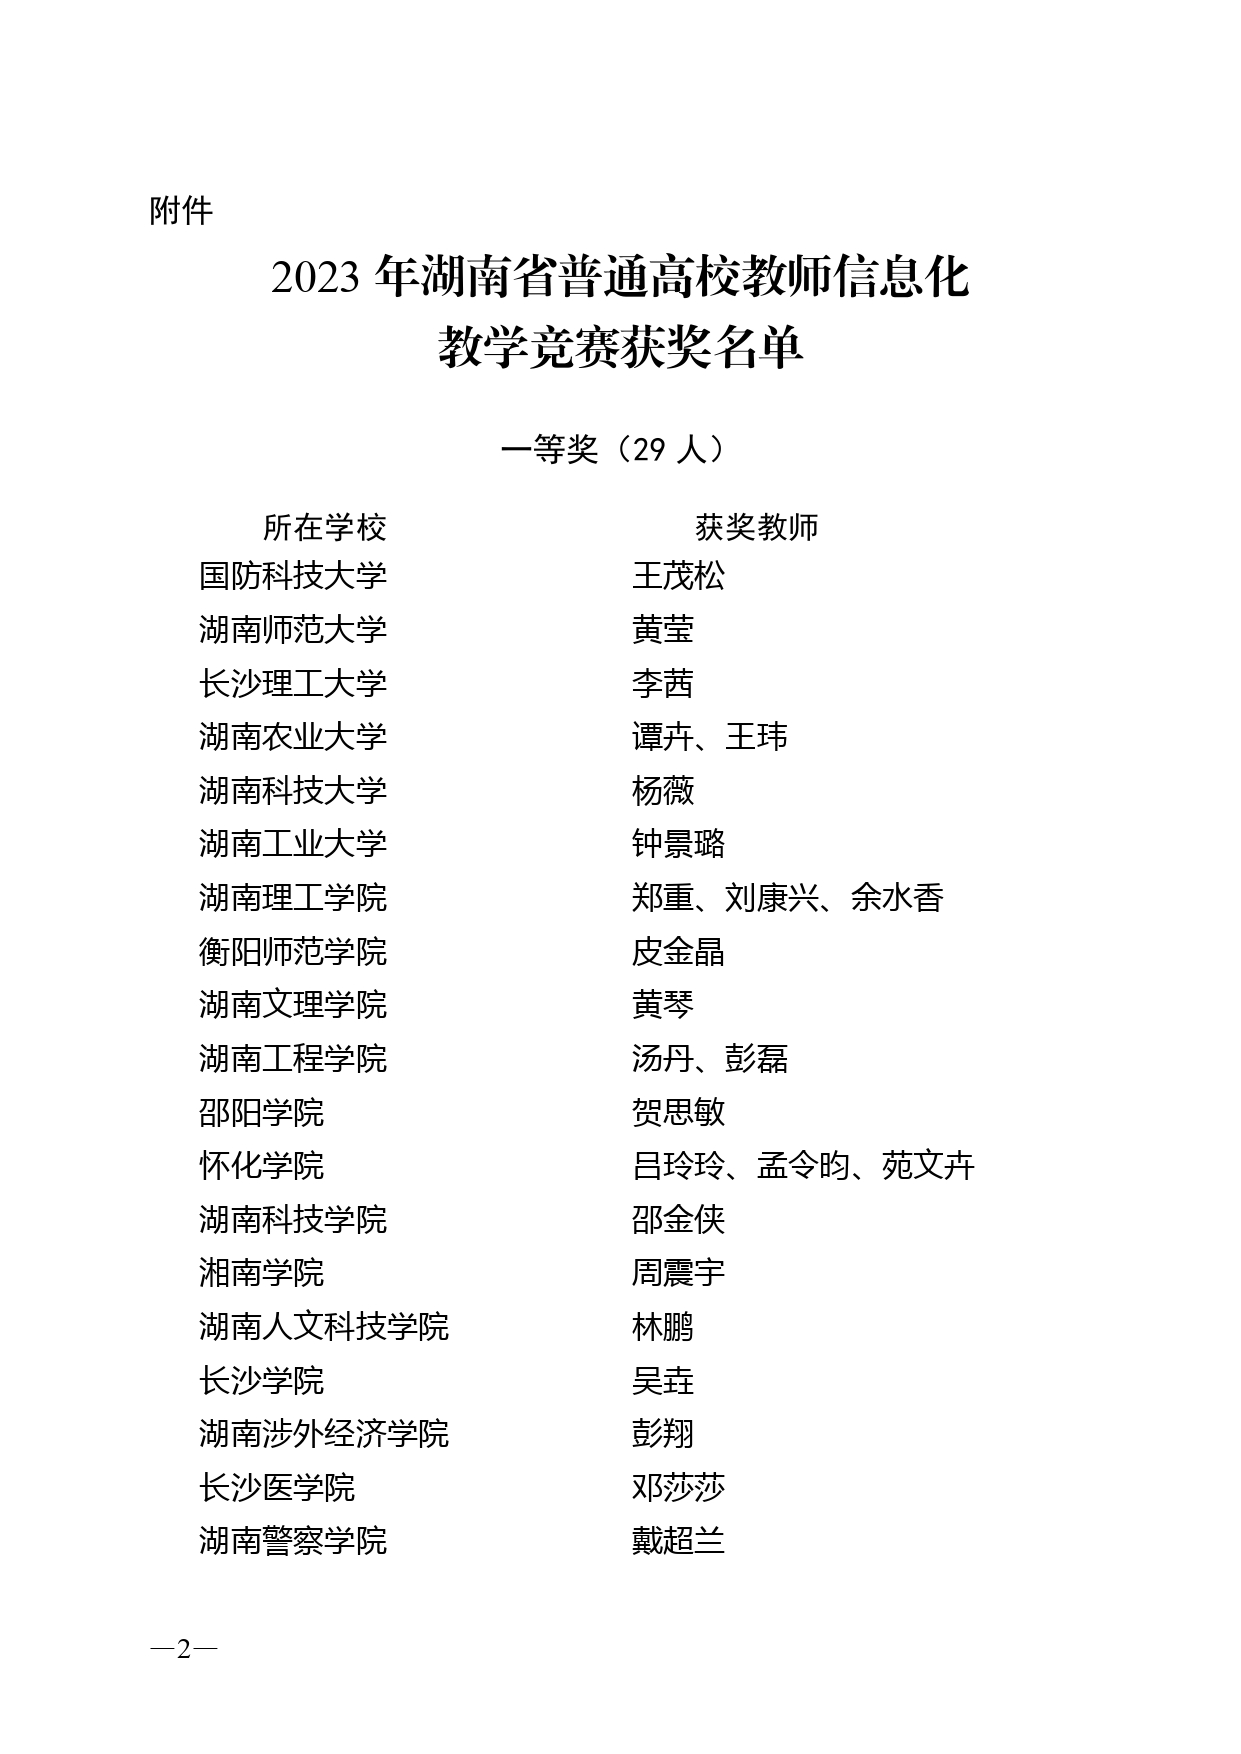 关于公布2023年湖南省普通高校教师信息化教学竞赛获奖结果的通知_page-0002.jpg